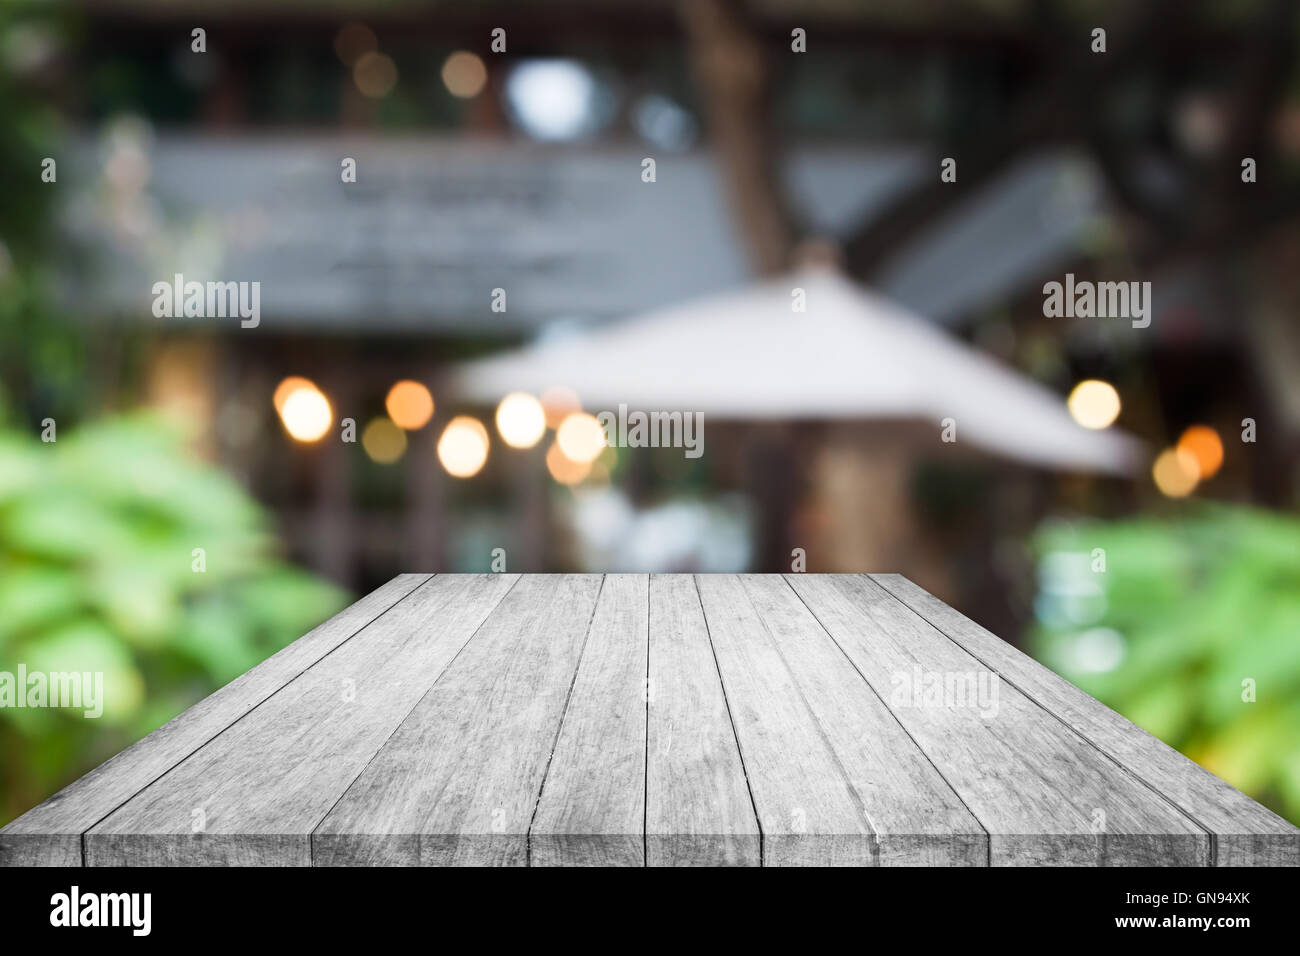 Noir et blanc Vue de dessus de table en bois avec cafe blurred abstract background Banque D'Images